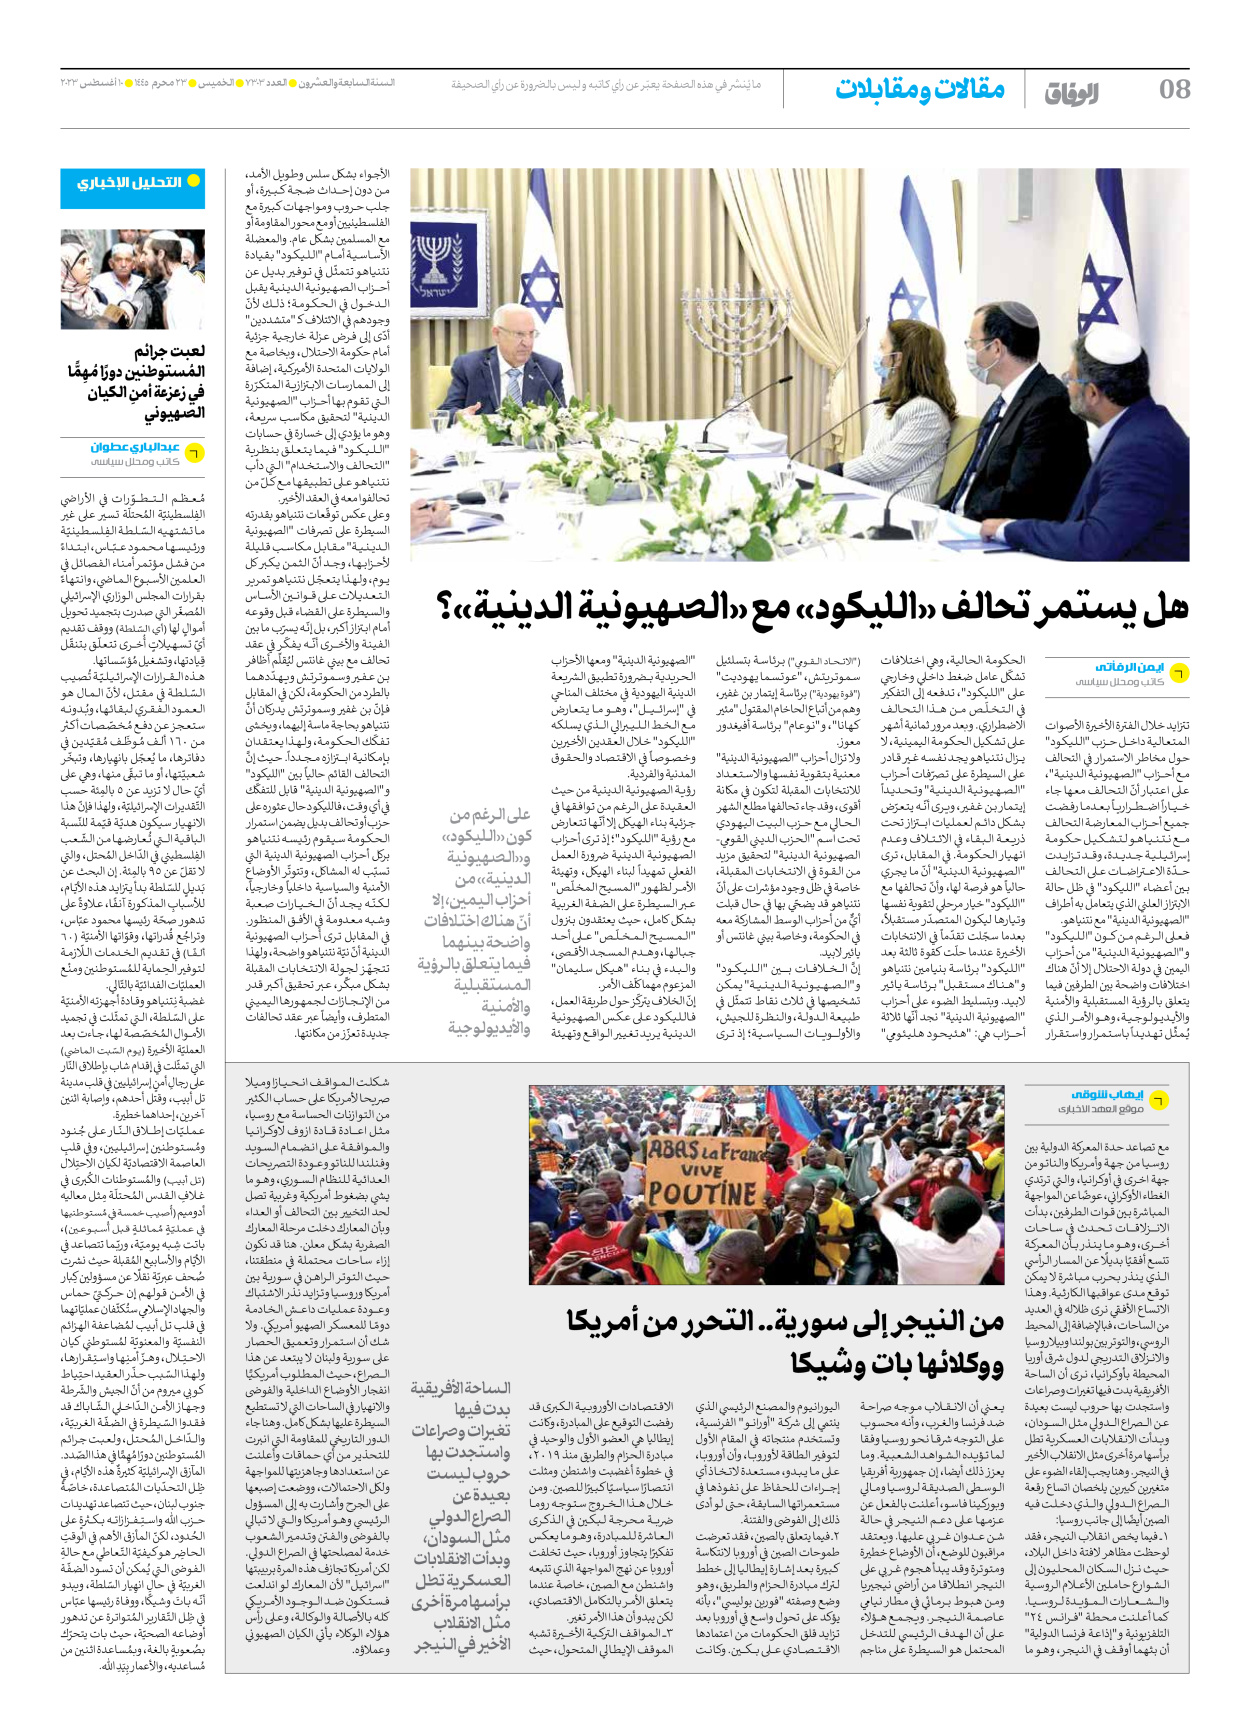 صحیفة ایران الدولیة الوفاق - العدد سبعة آلاف وثلاثمائة وثلاثة - ١٠ أغسطس ٢٠٢٣ - الصفحة ۸